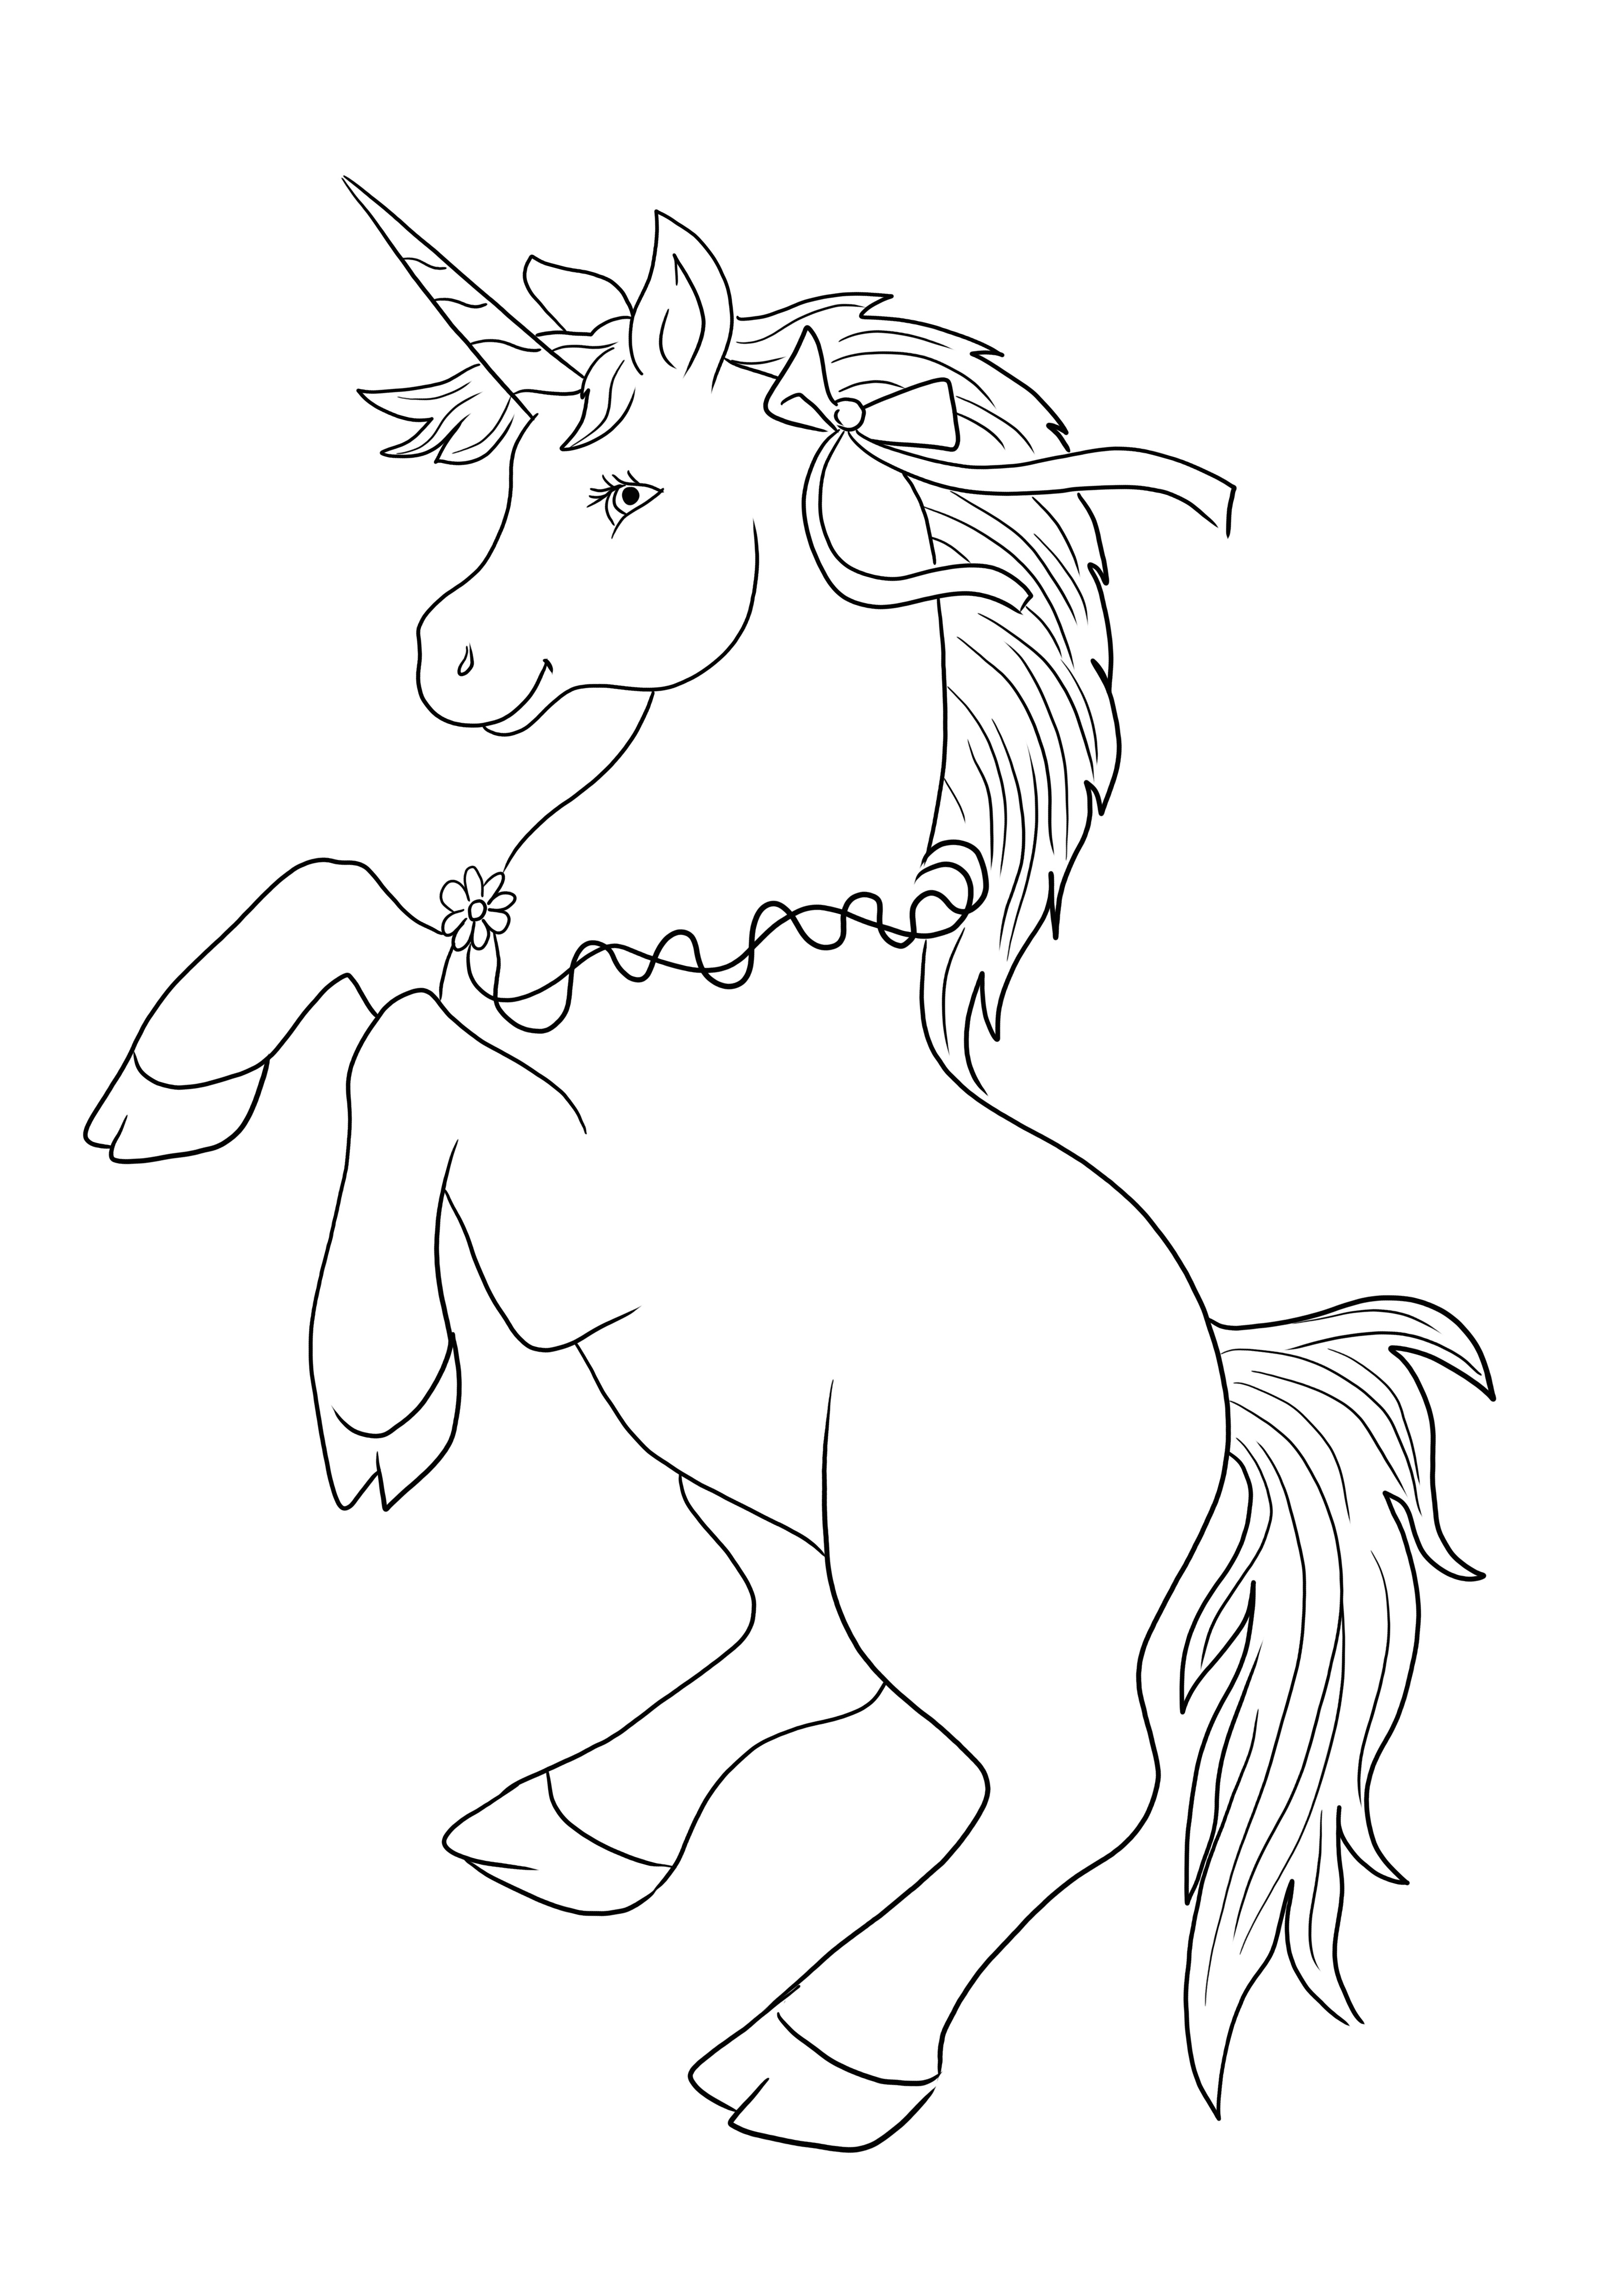 Unicorn dengan pita busur dan bunga bebas untuk diunduh dan diwarnai dengan mudah